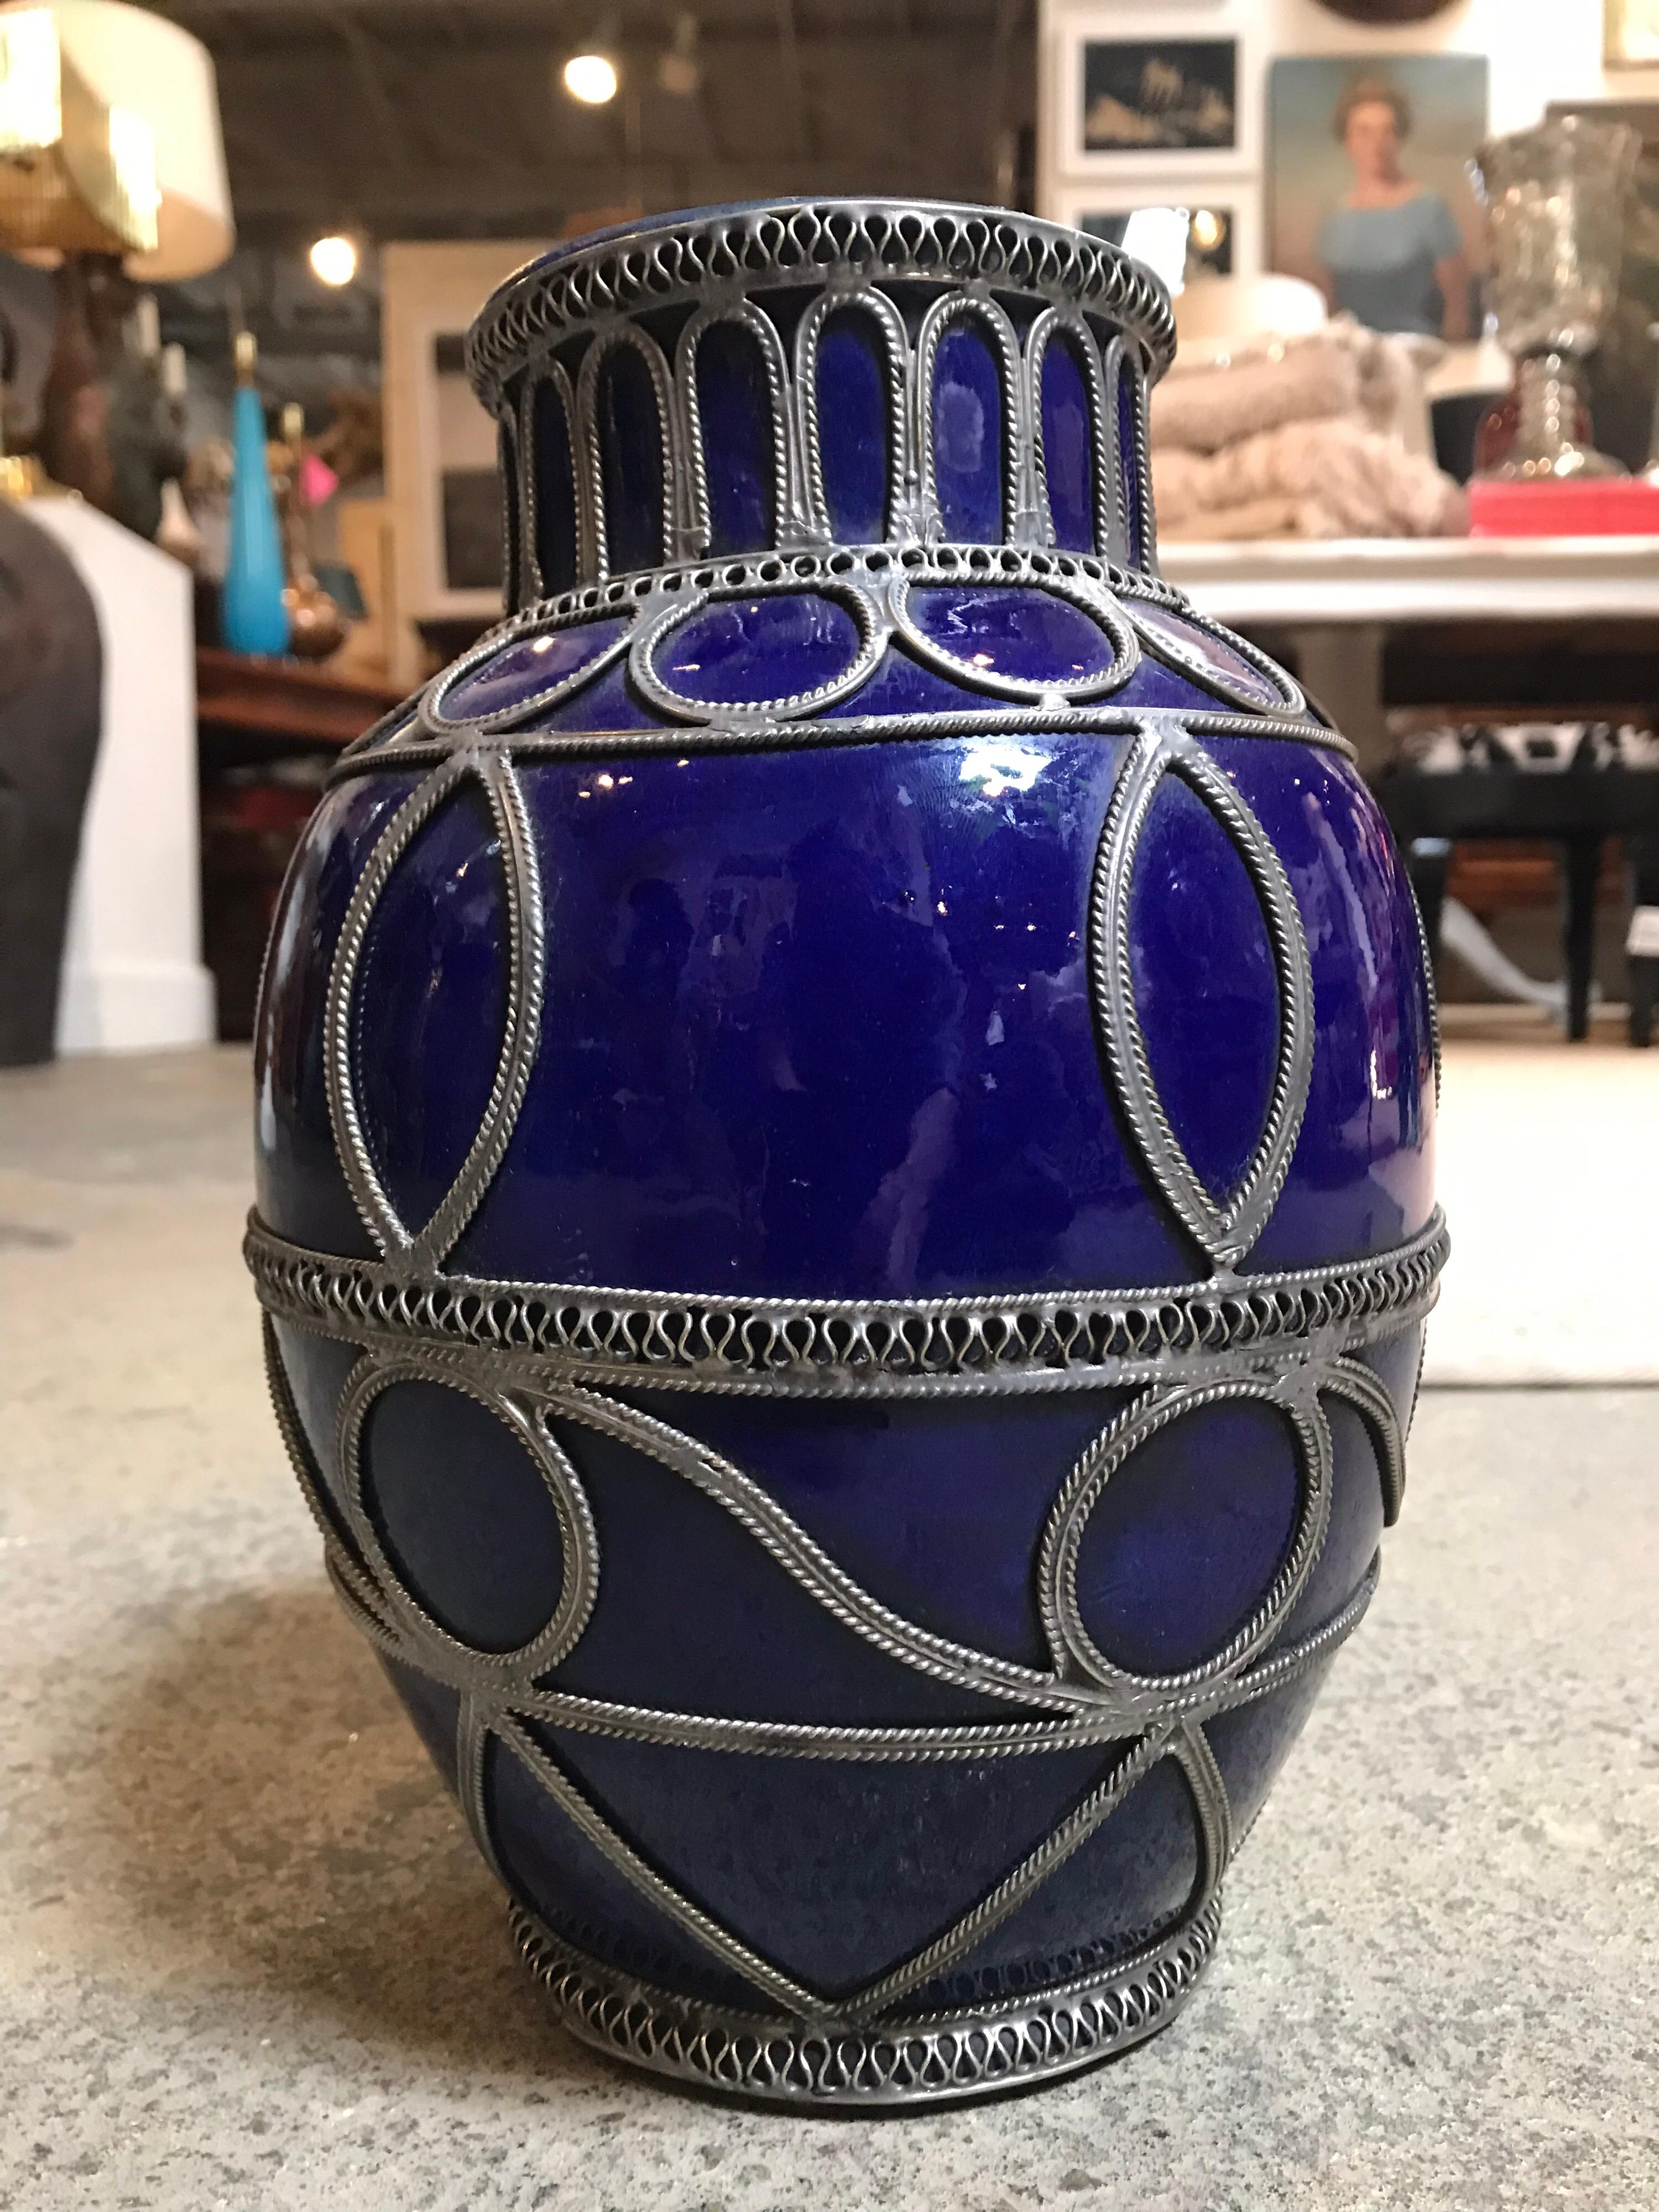 Dieser kleine, dunkelblaue marokkanische Topf ist handbemalt und keramisch glasiert. Es ist mit verschiedenen Bändern aus silberähnlichem Metall verziert, die durchweg runde geometrische Muster ergeben.